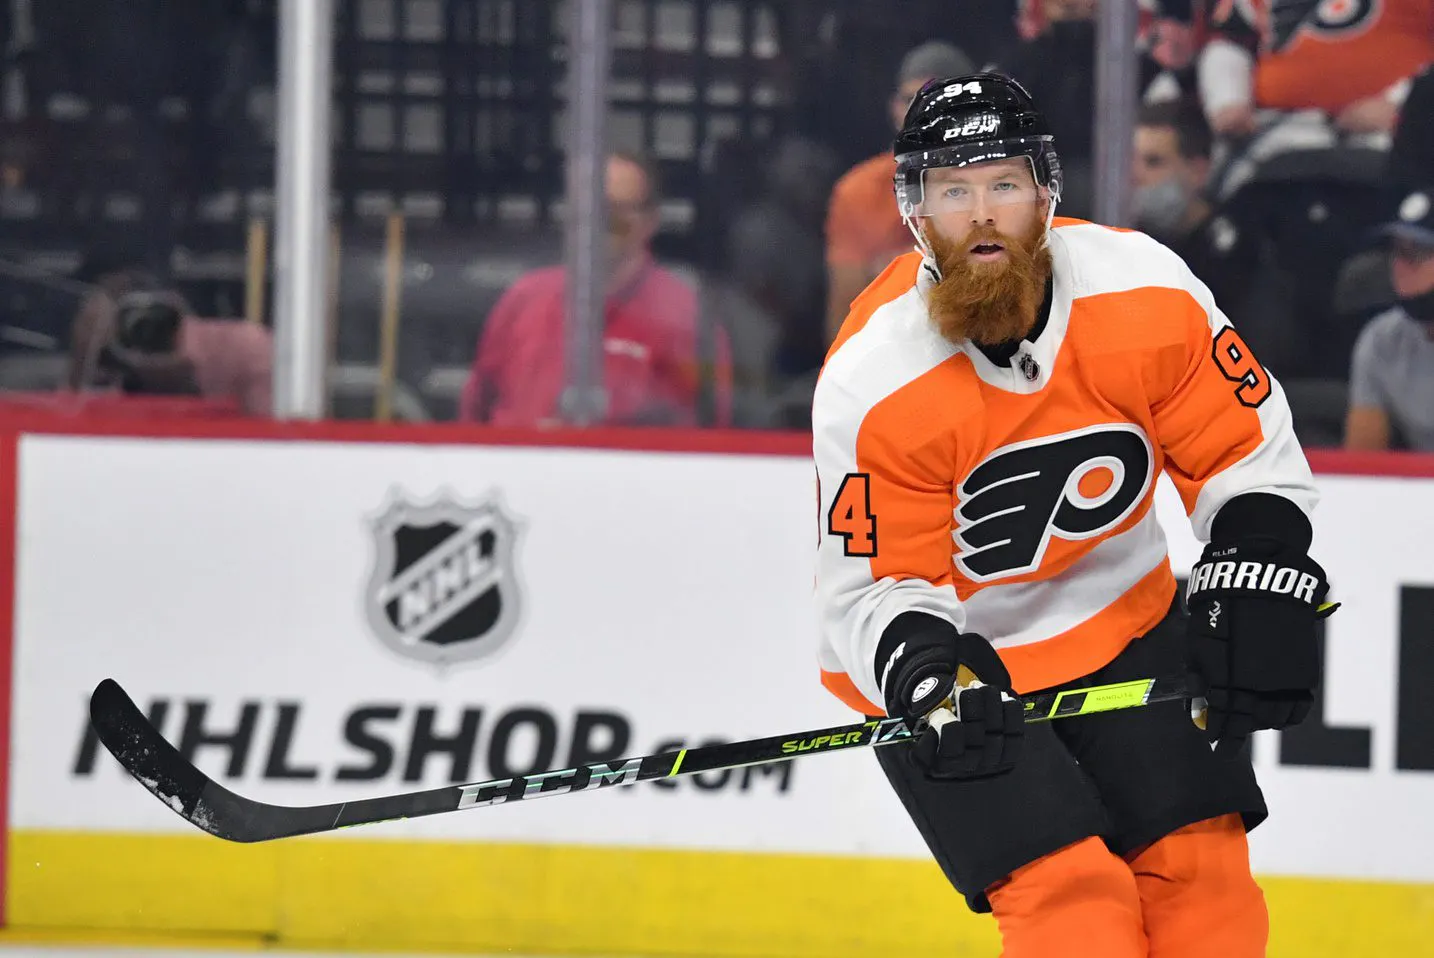 Flyers say defenseman Ryan Ellis’ injury may be career ending